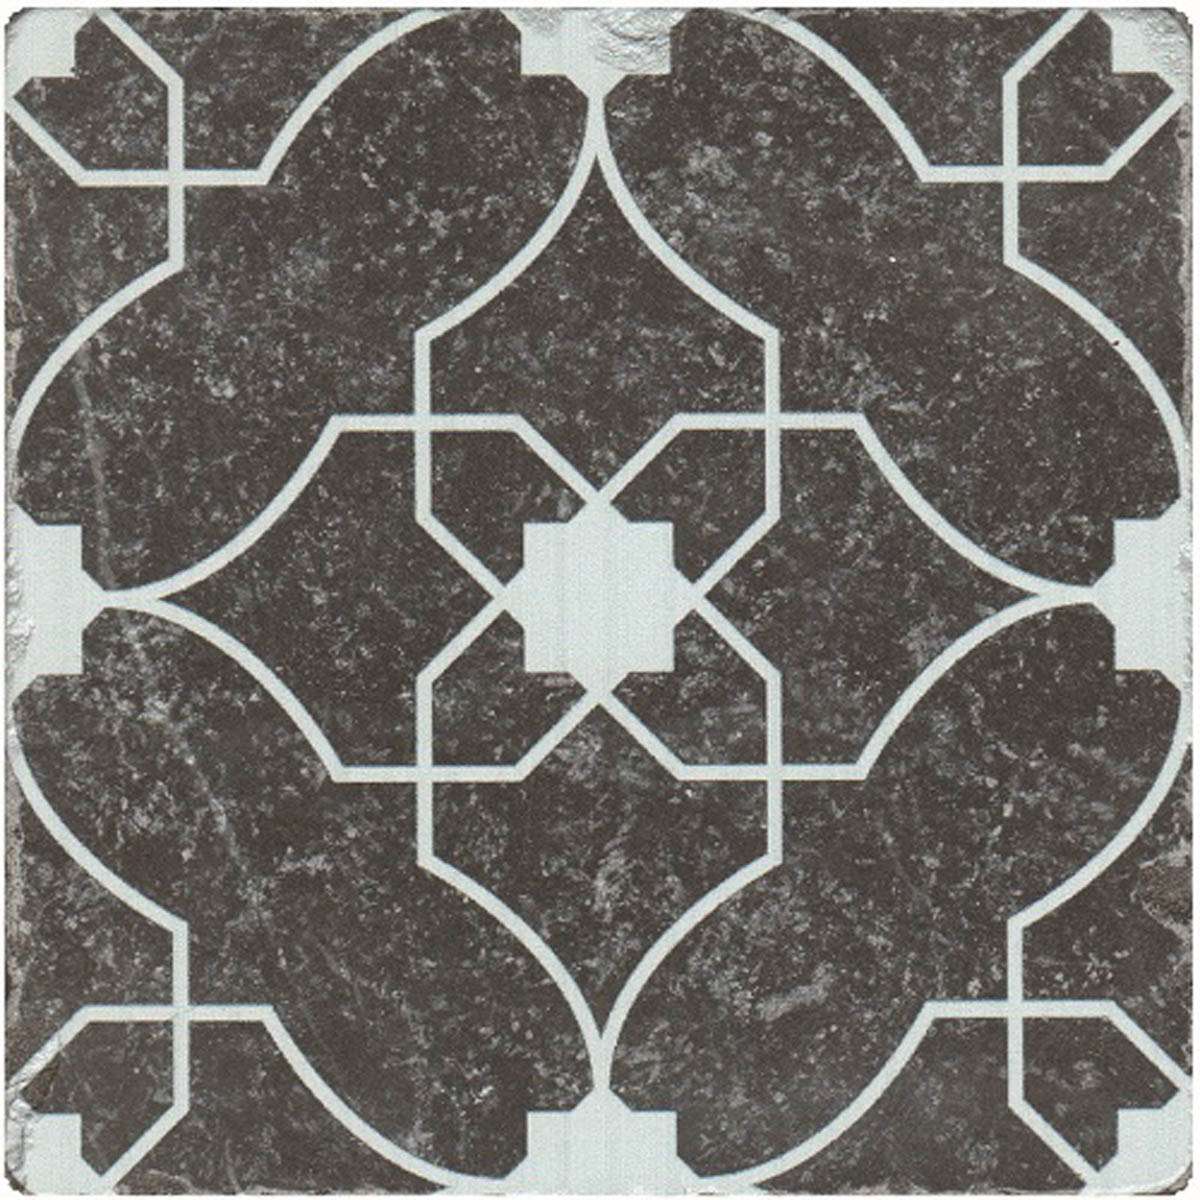 Керамическая плитка Stone4home Marble Black Motif №7, цвет чёрно-белый, поверхность матовая, квадрат, 100x100